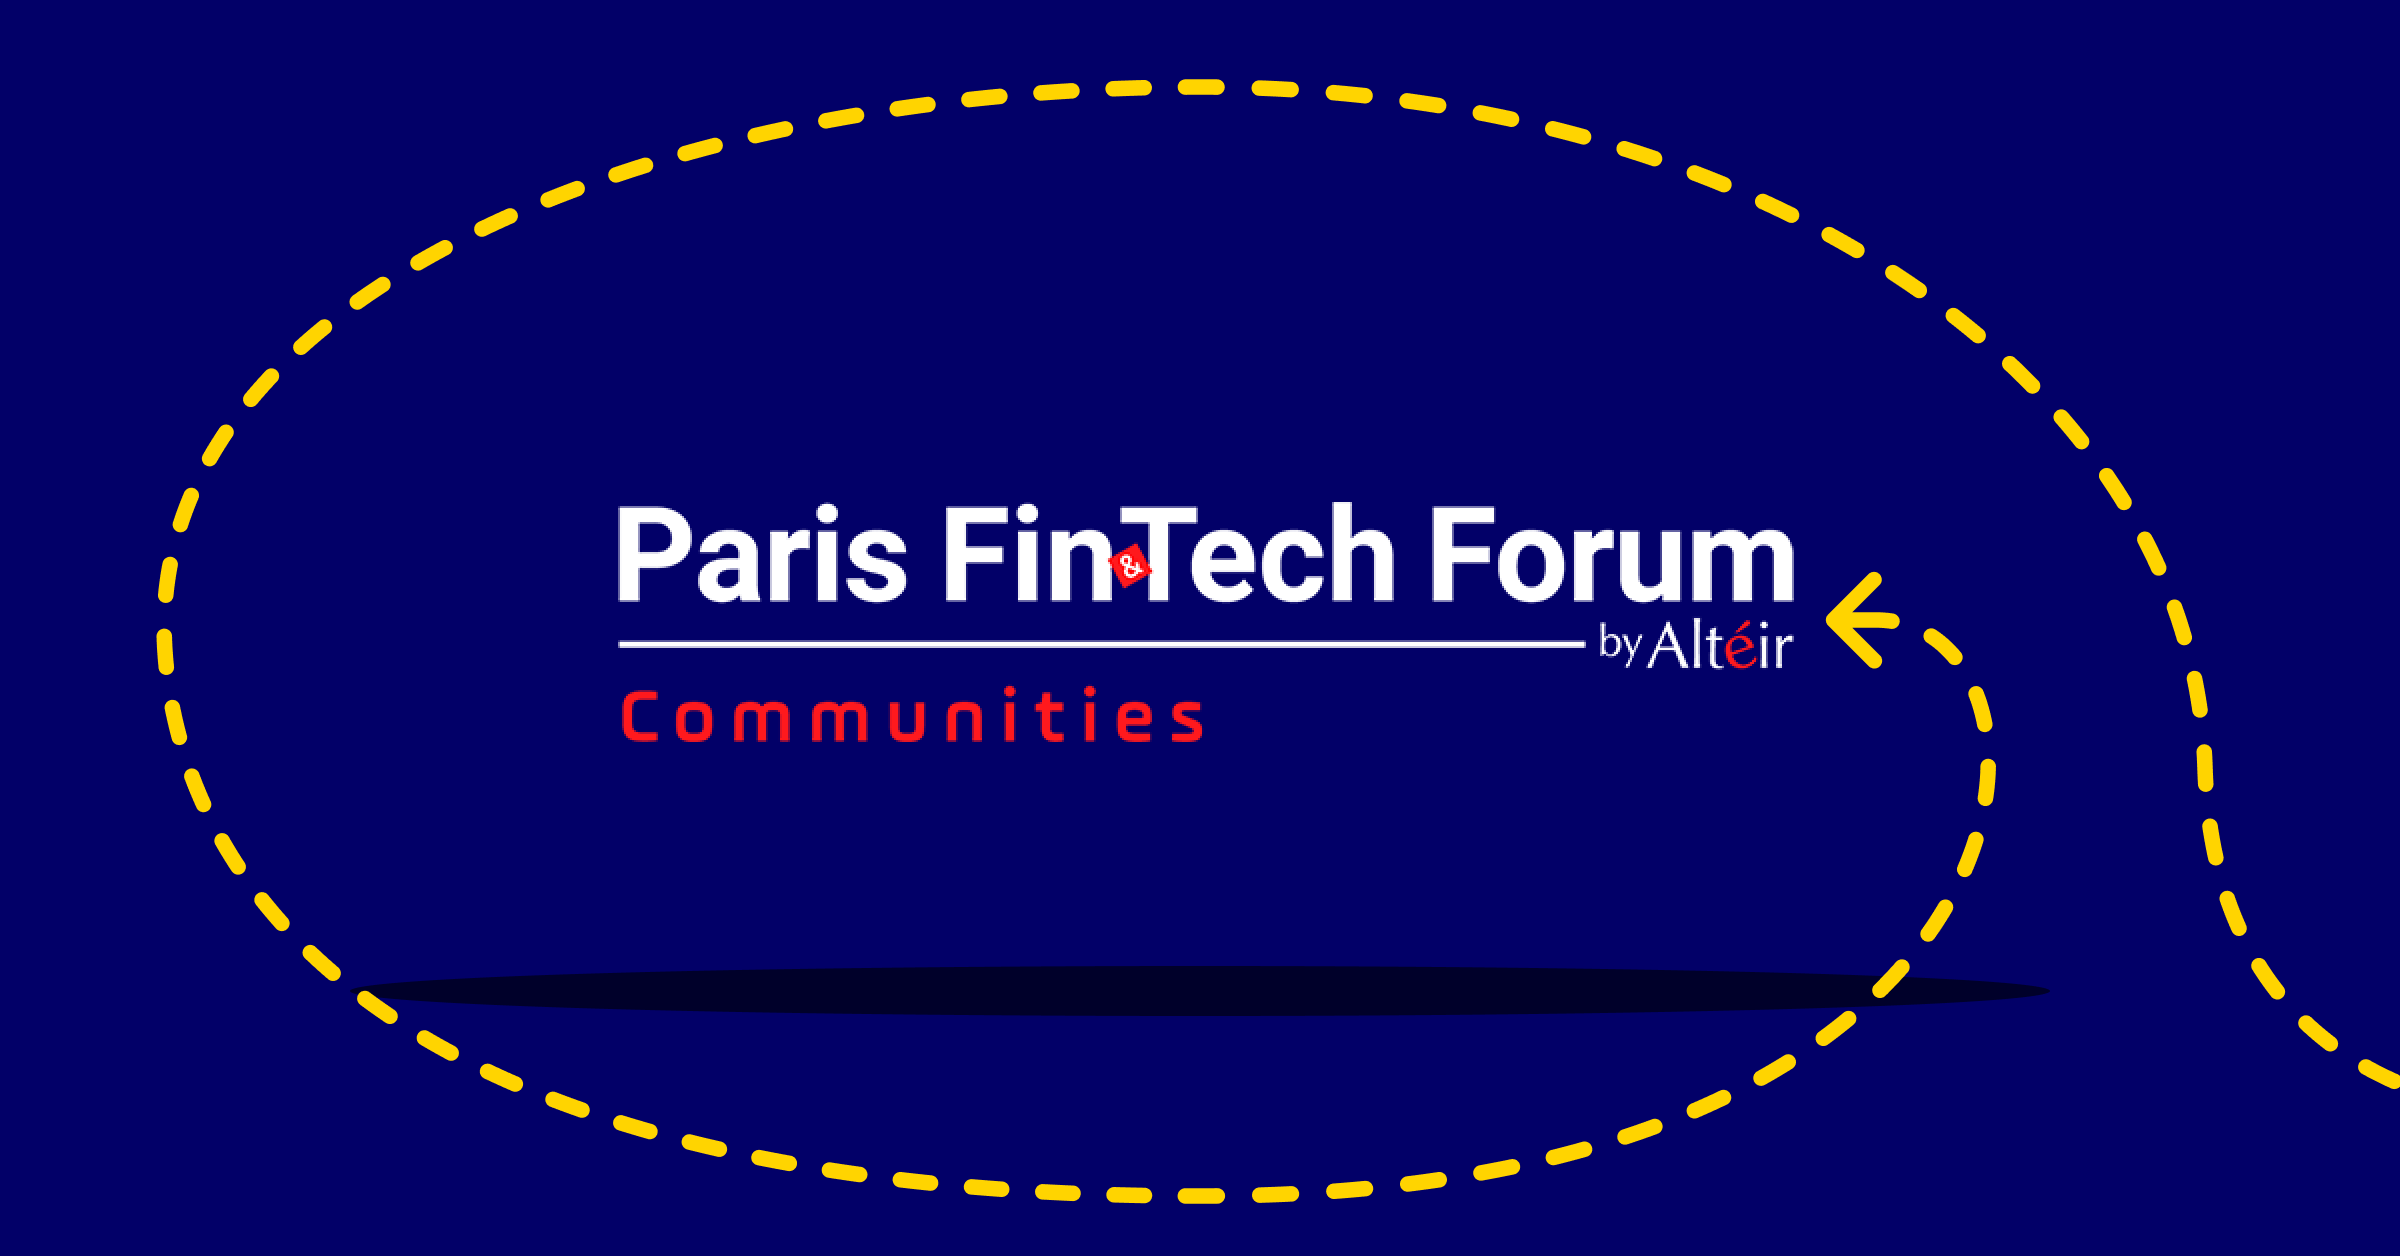 Paris Fintech Forum 2020: at the heart of digital finance